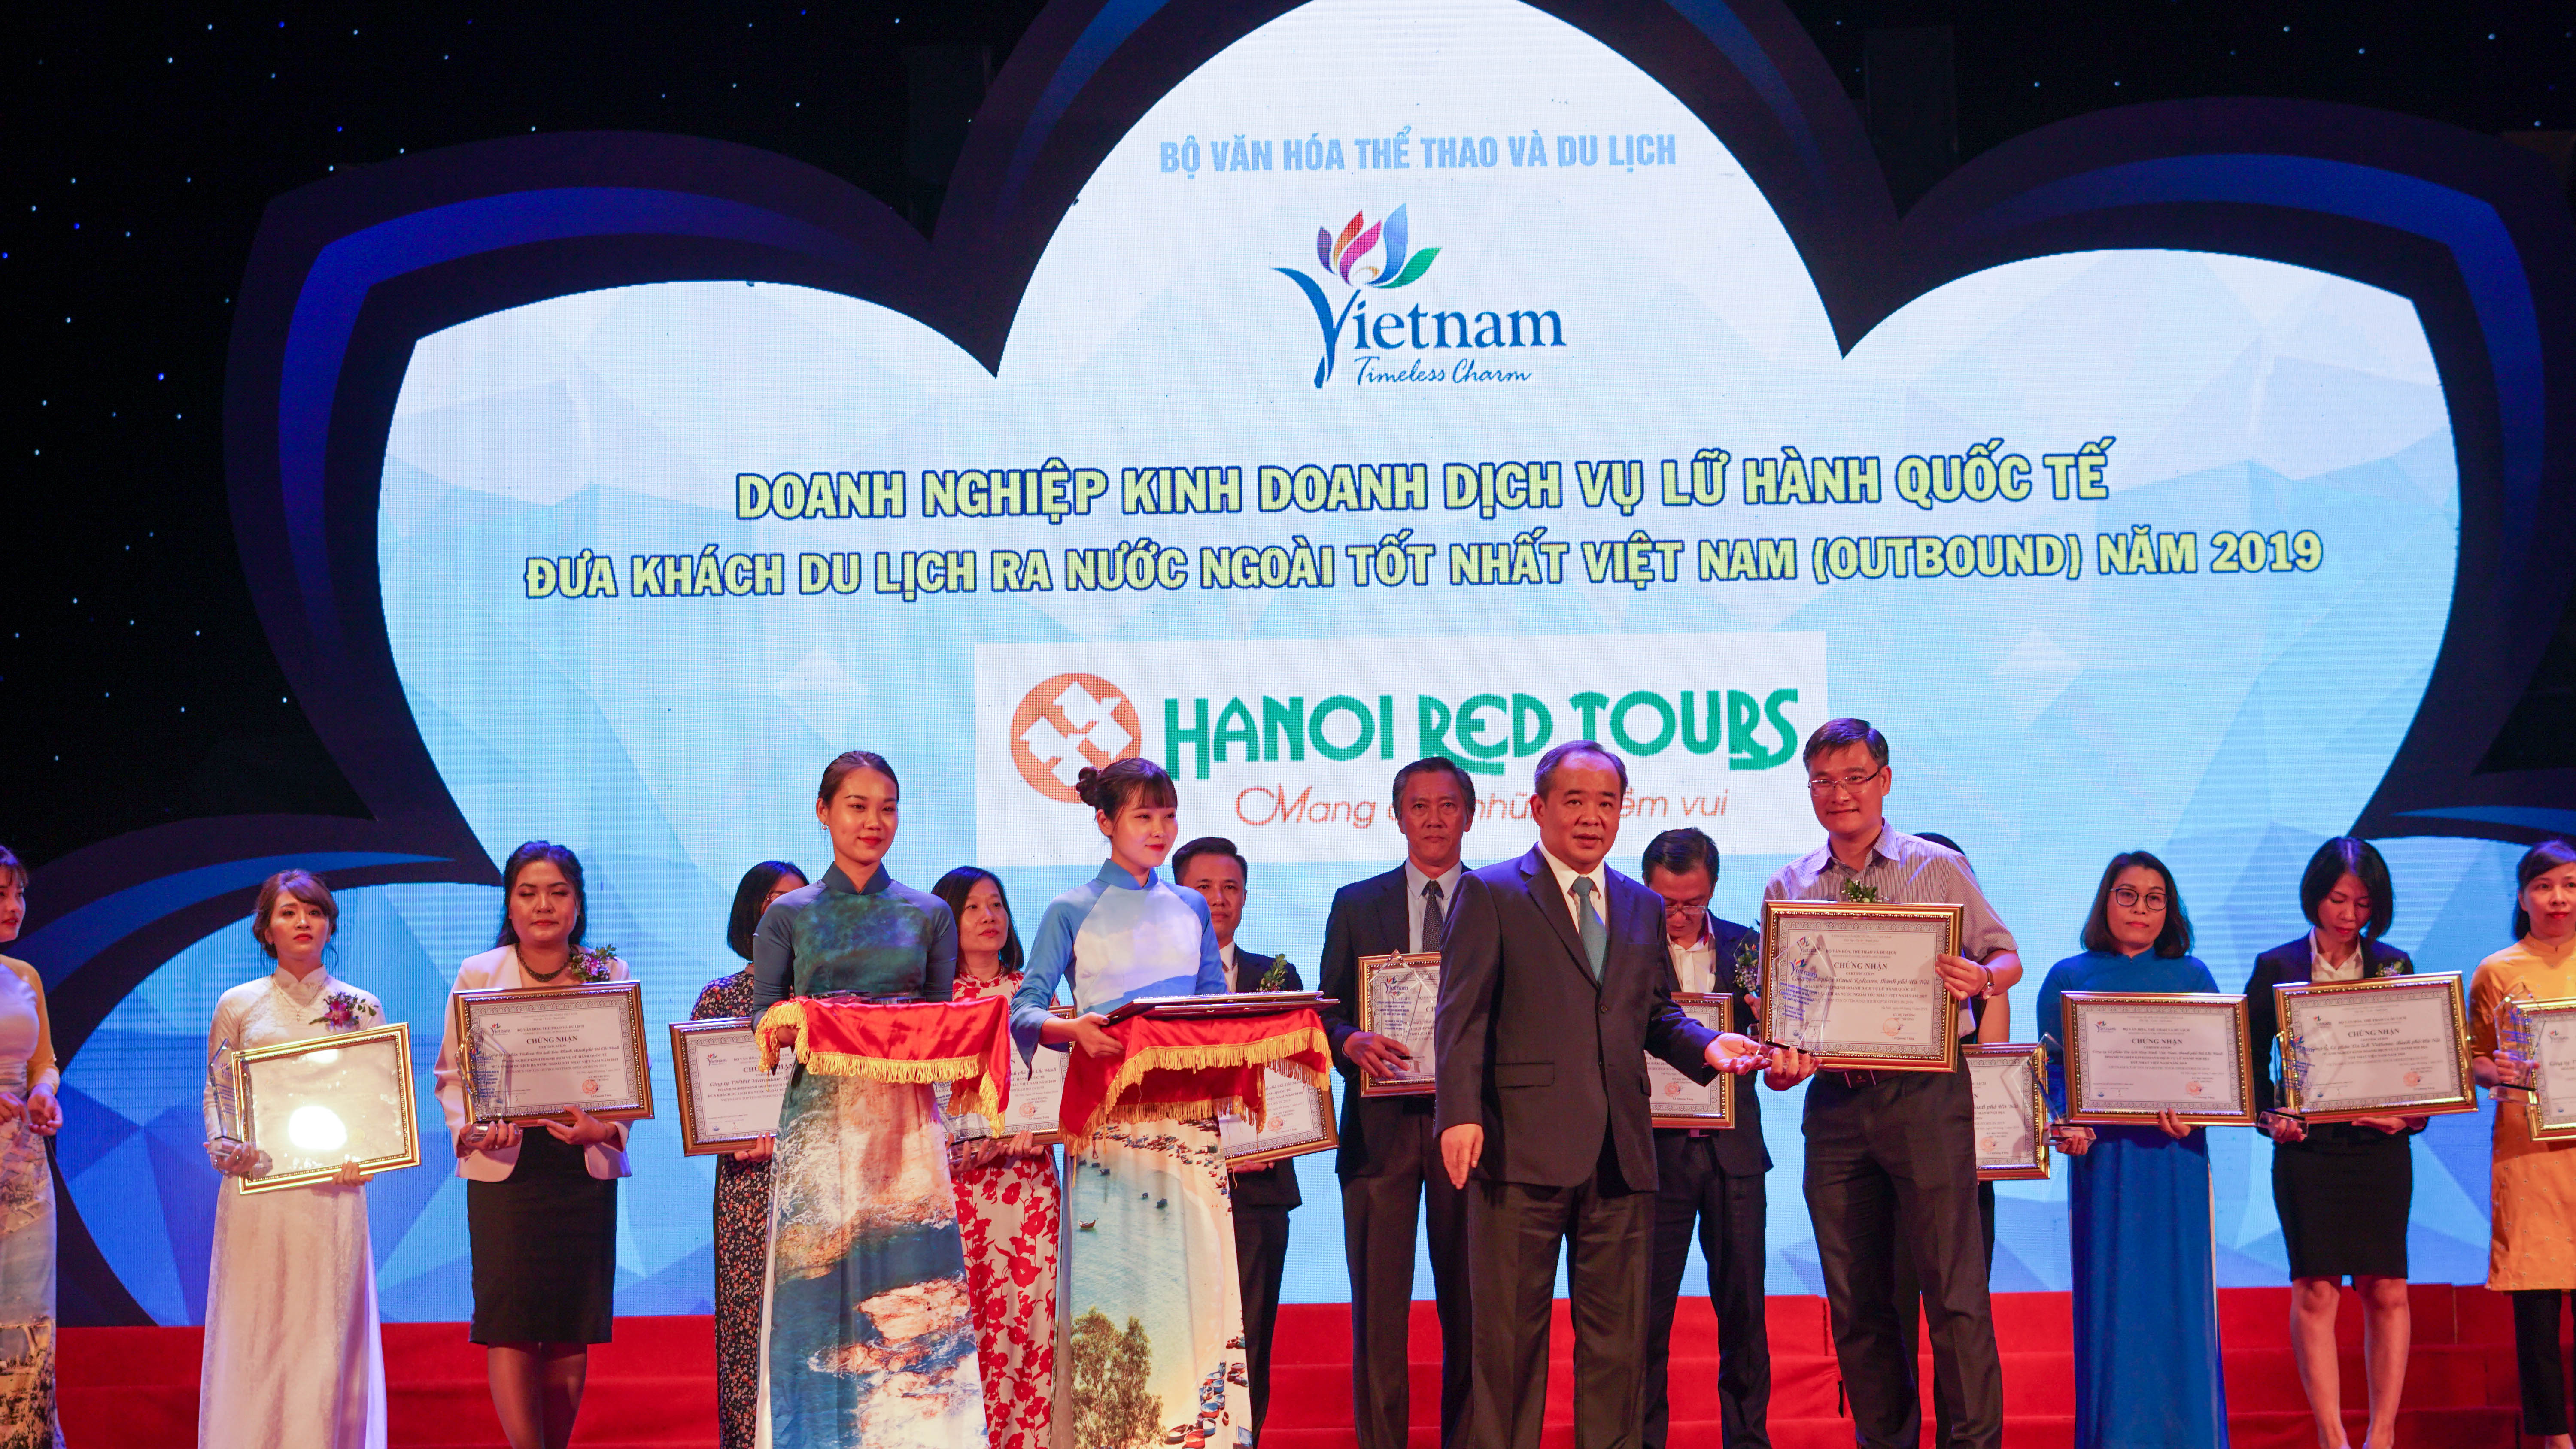 HanoiRedtours tiếp tục đạt giải thưởng Doanh nghiệp Du lịch hàng đầu Việt Nam năm 2019